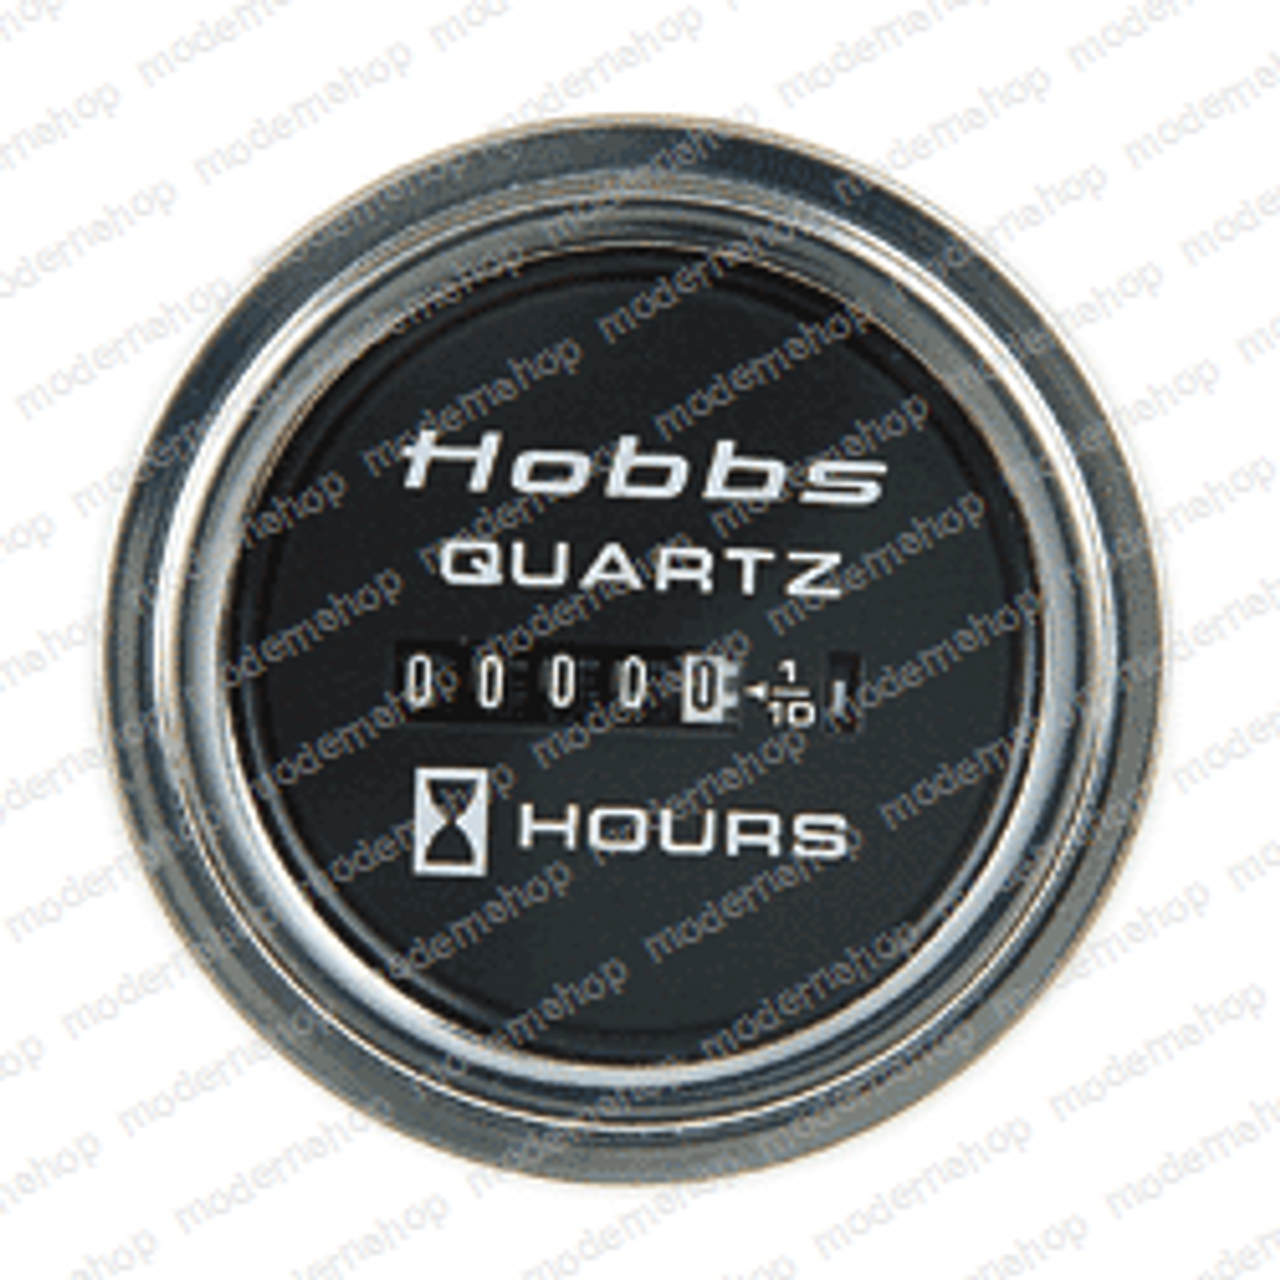 776: B Hobbs GAUGE - HOUR METER